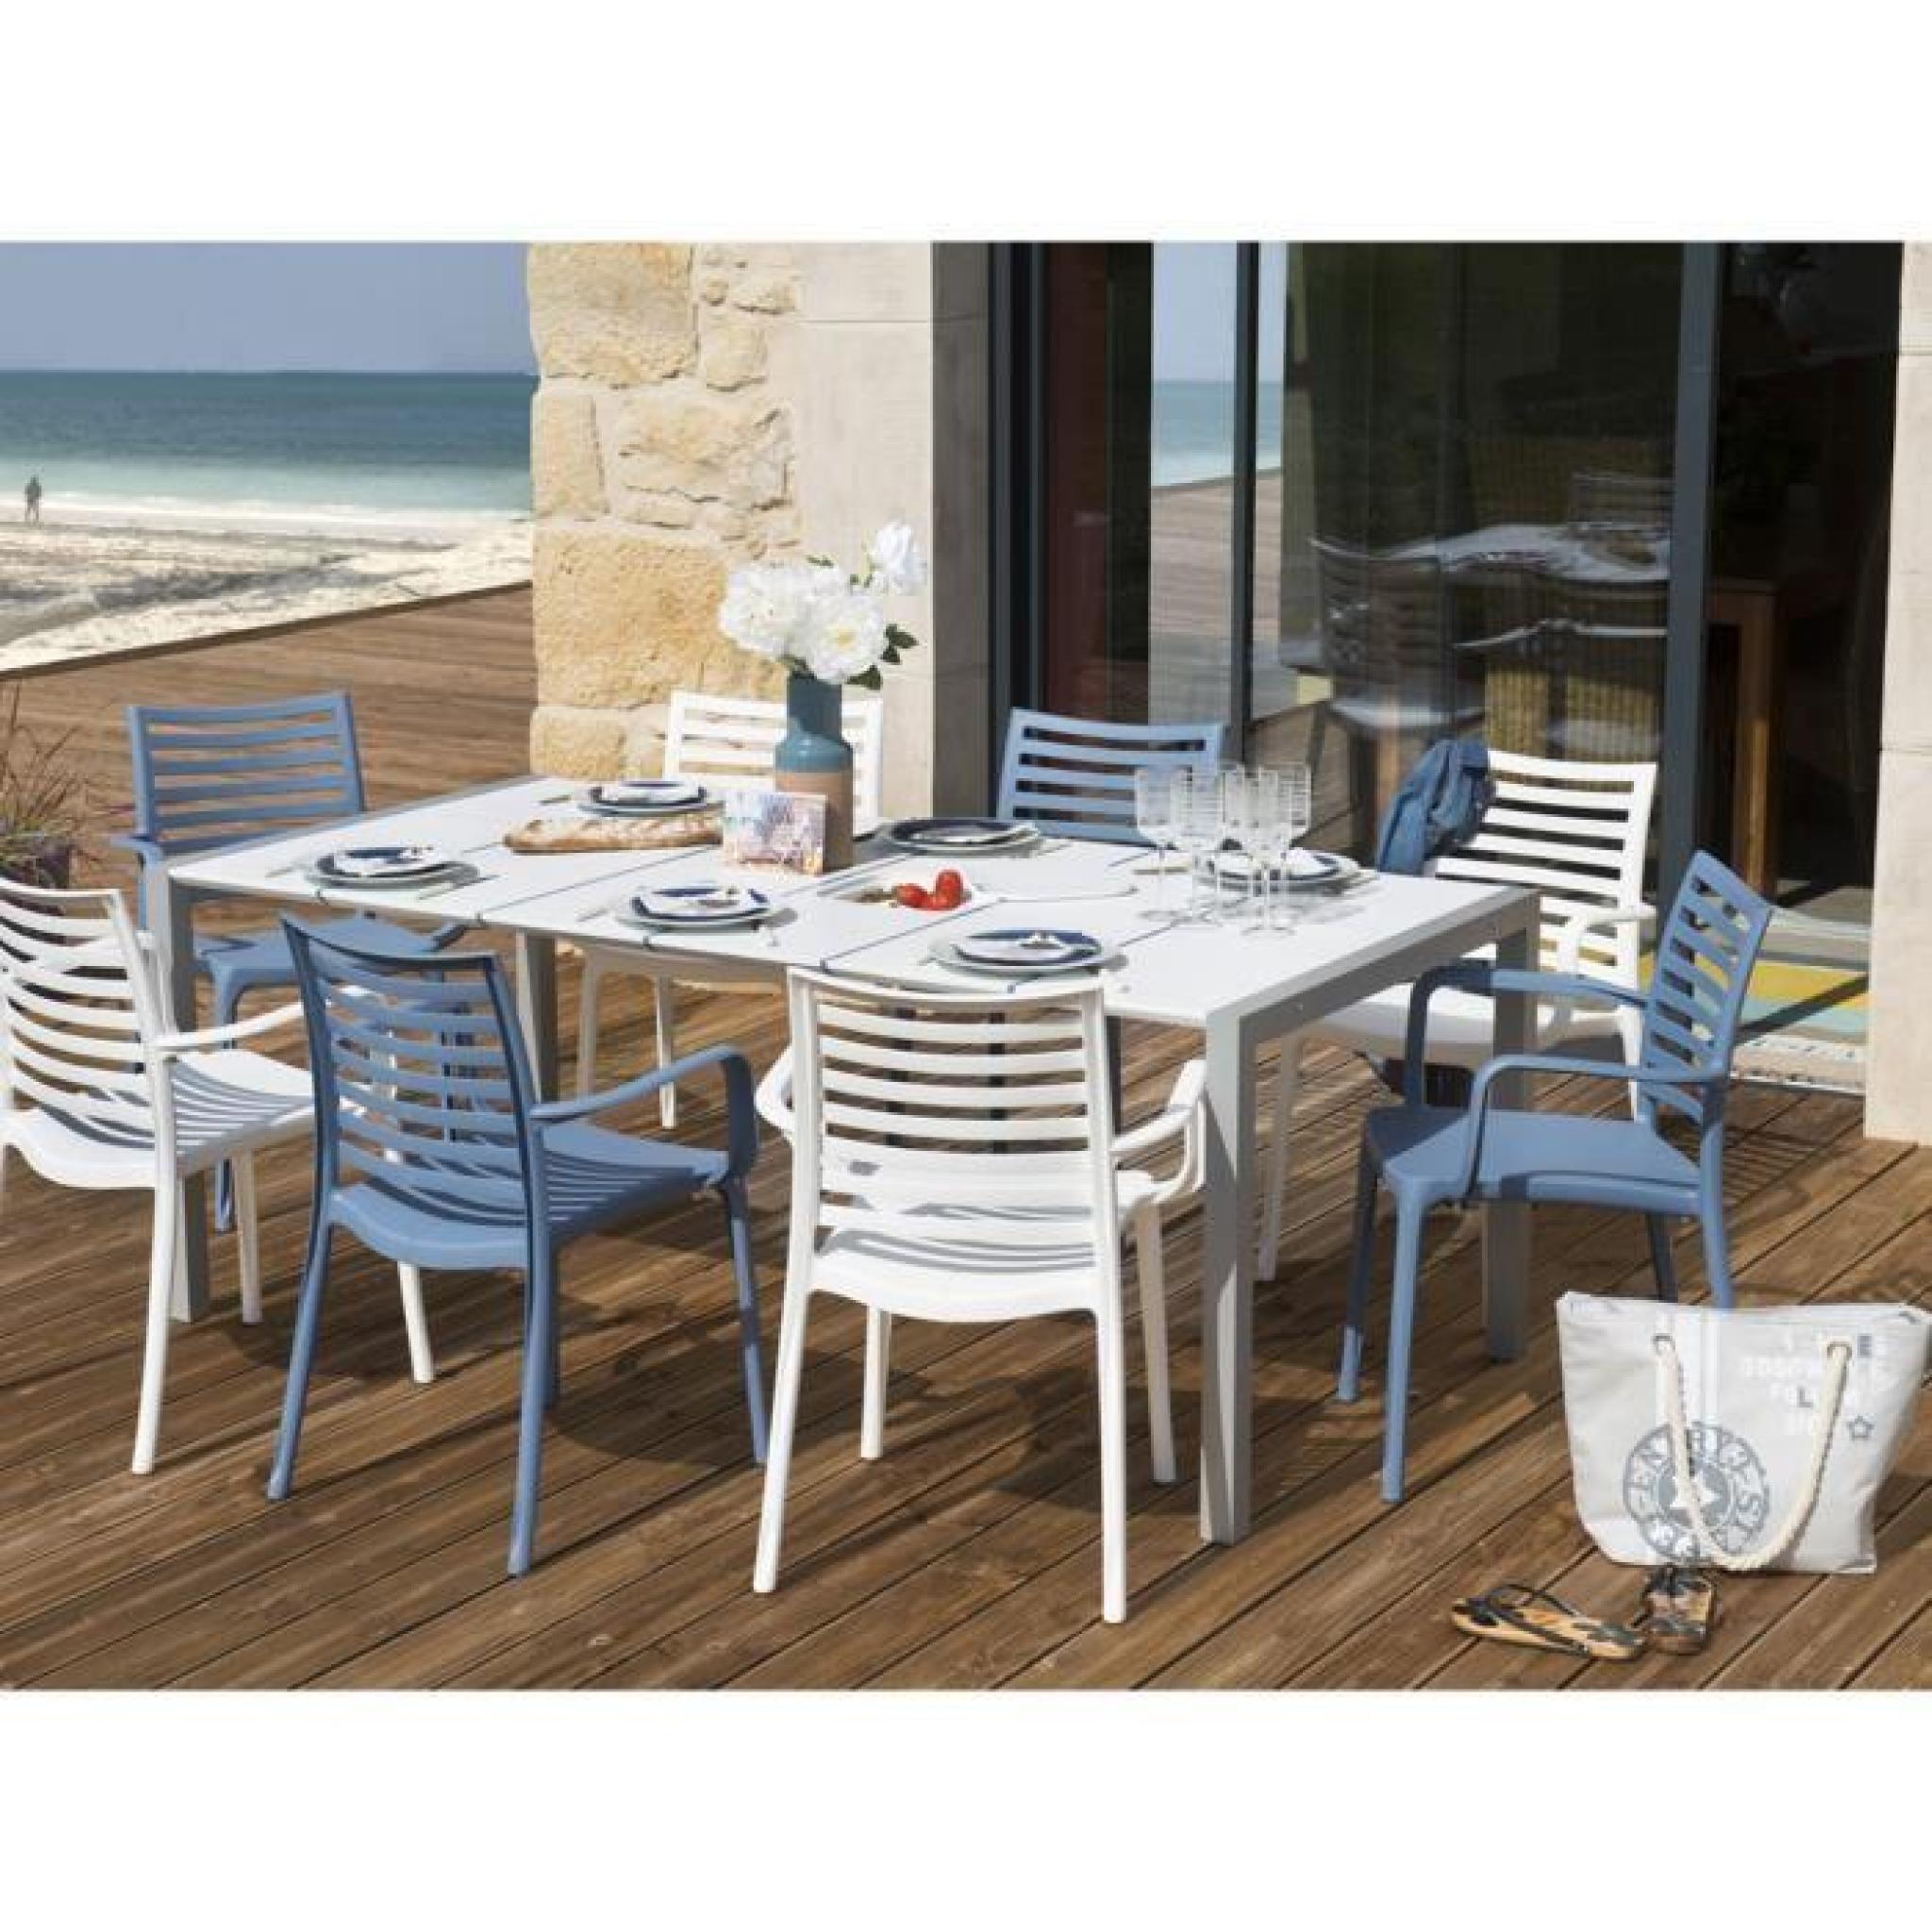 Salon de jardin Sunday - 1 table + 4 fauteuils blancs + 4 fauteuils bleus